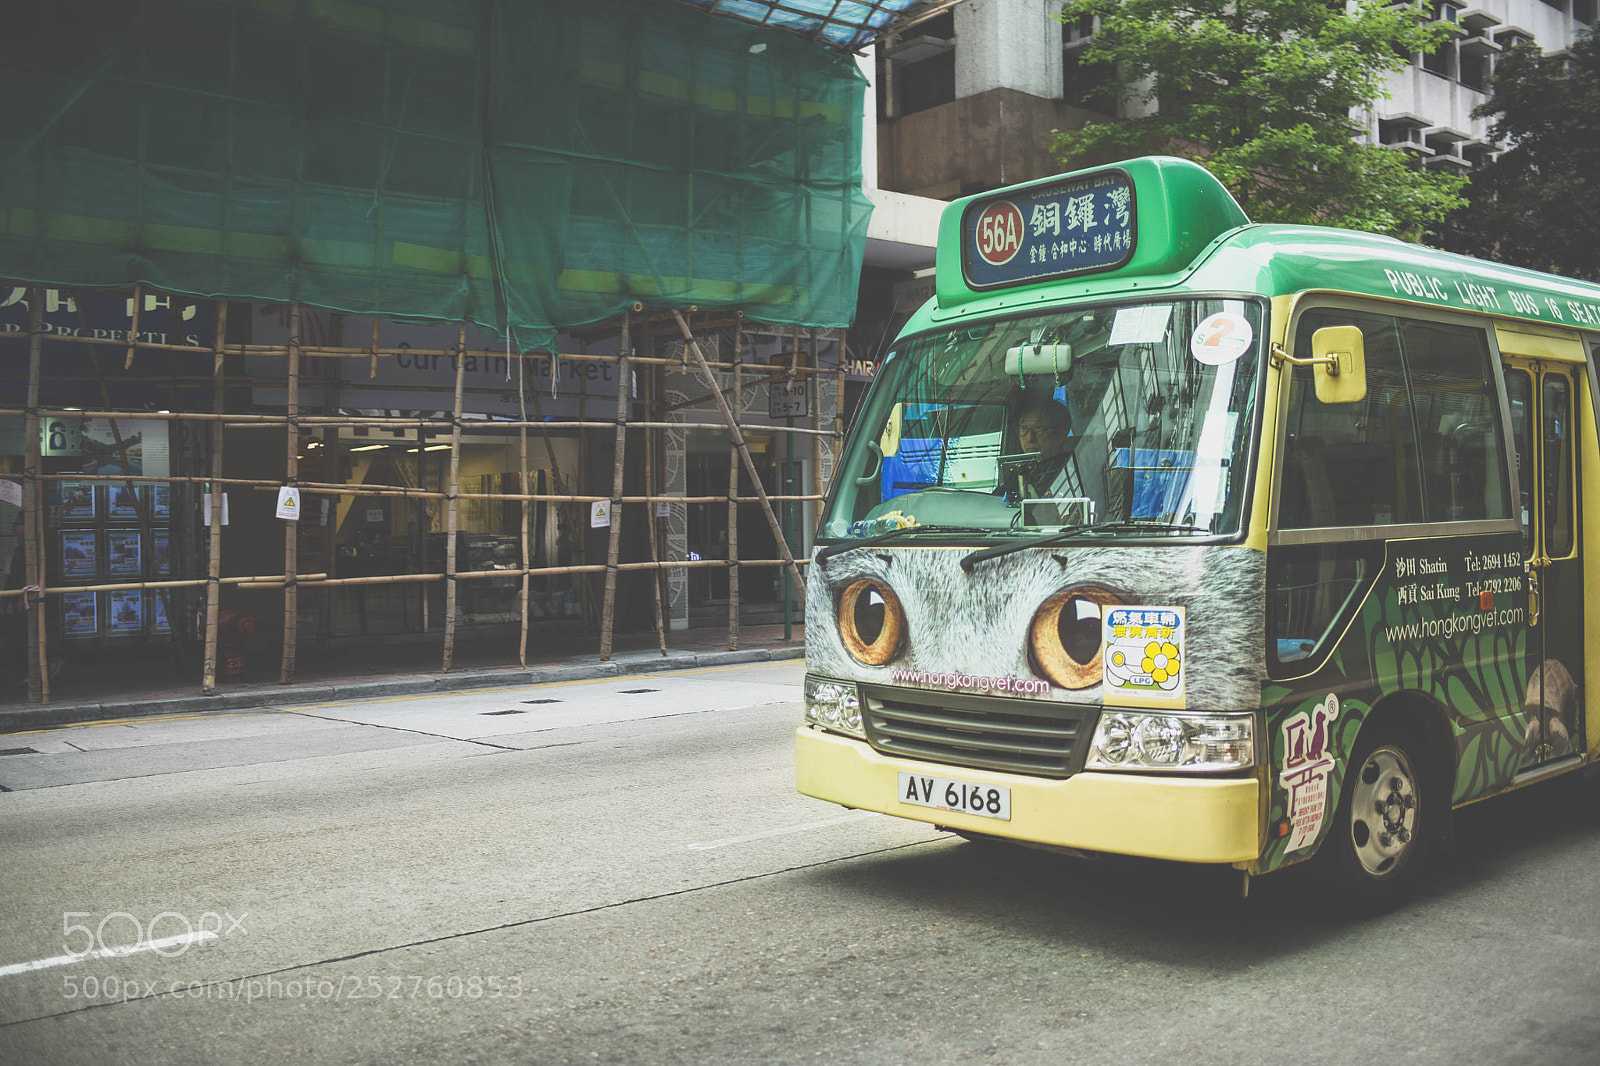 Nikon D750 sample photo. Hong kong bus photography